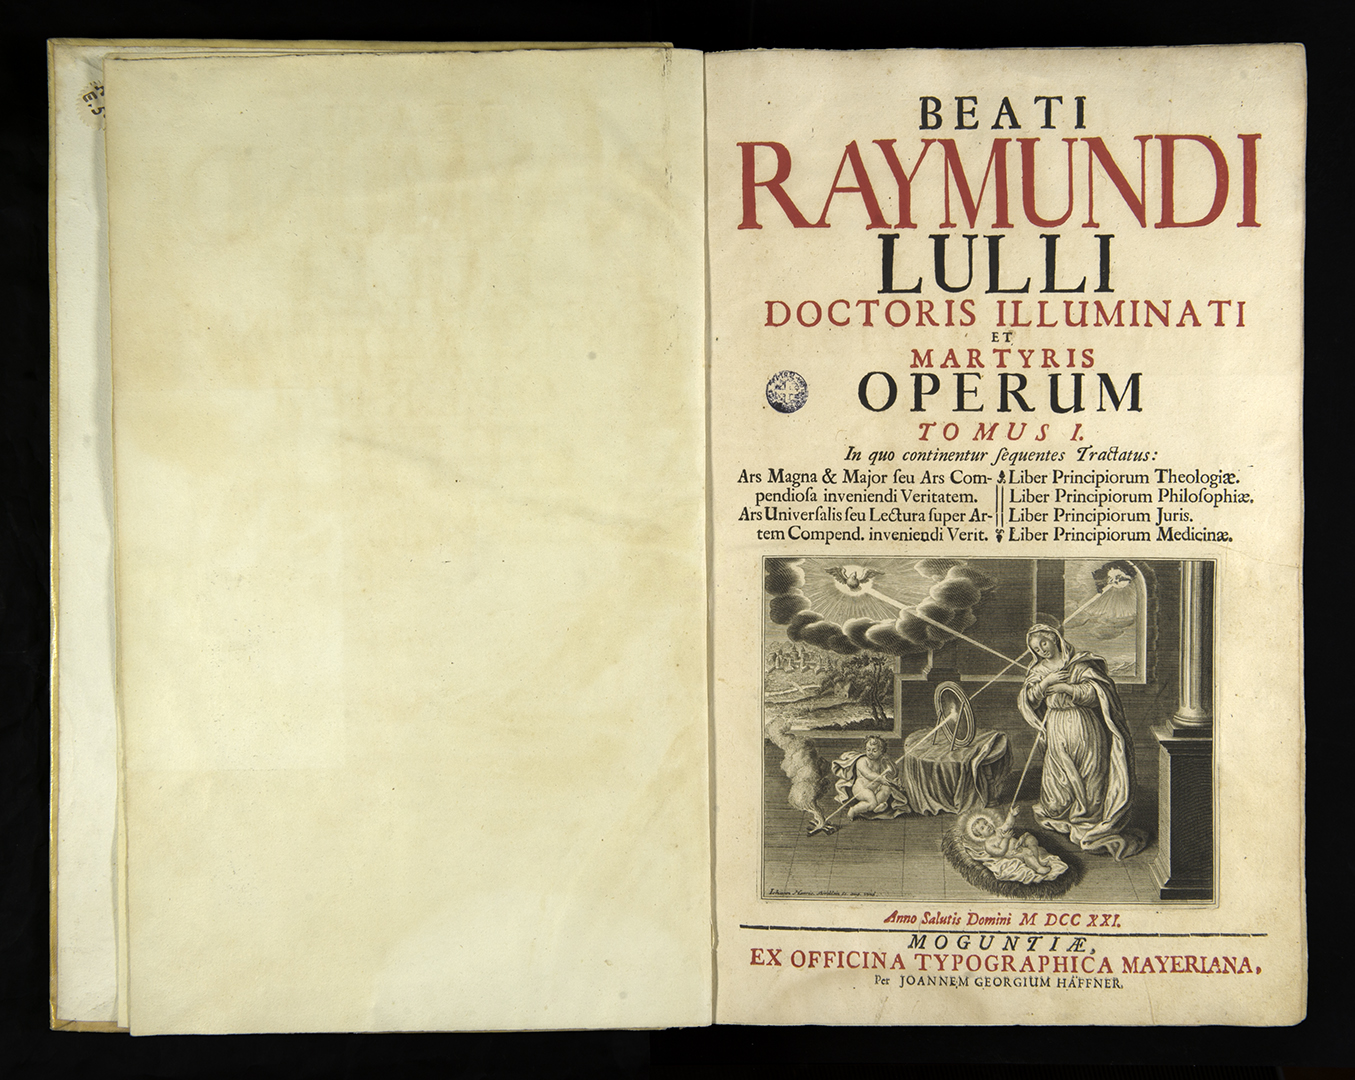 Edició moguntina de les obres de Ramon Llull